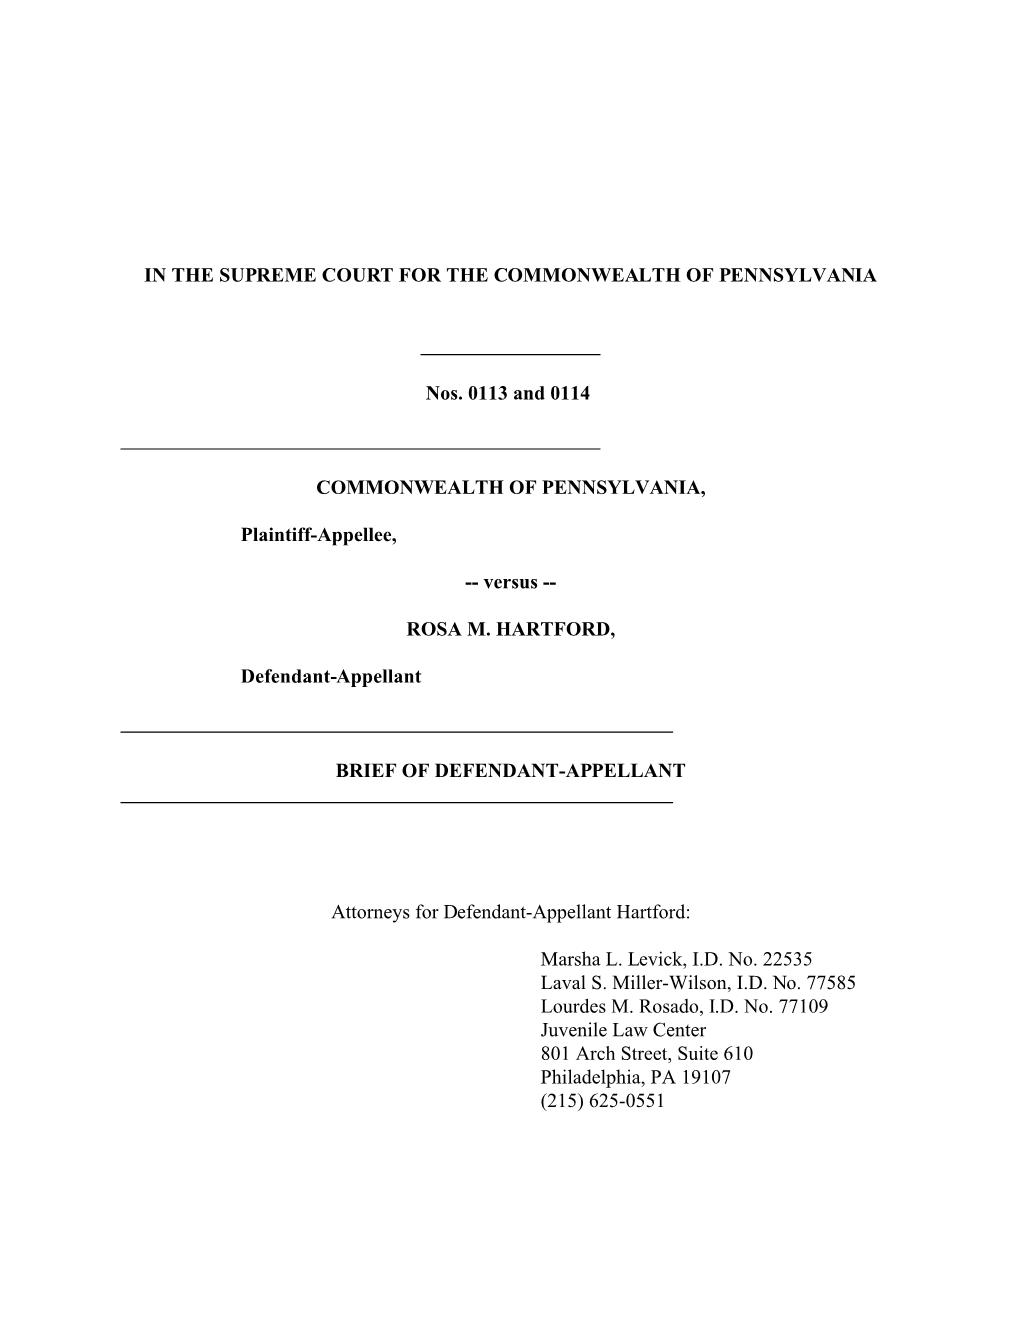 Brief of Defendant-Appellant